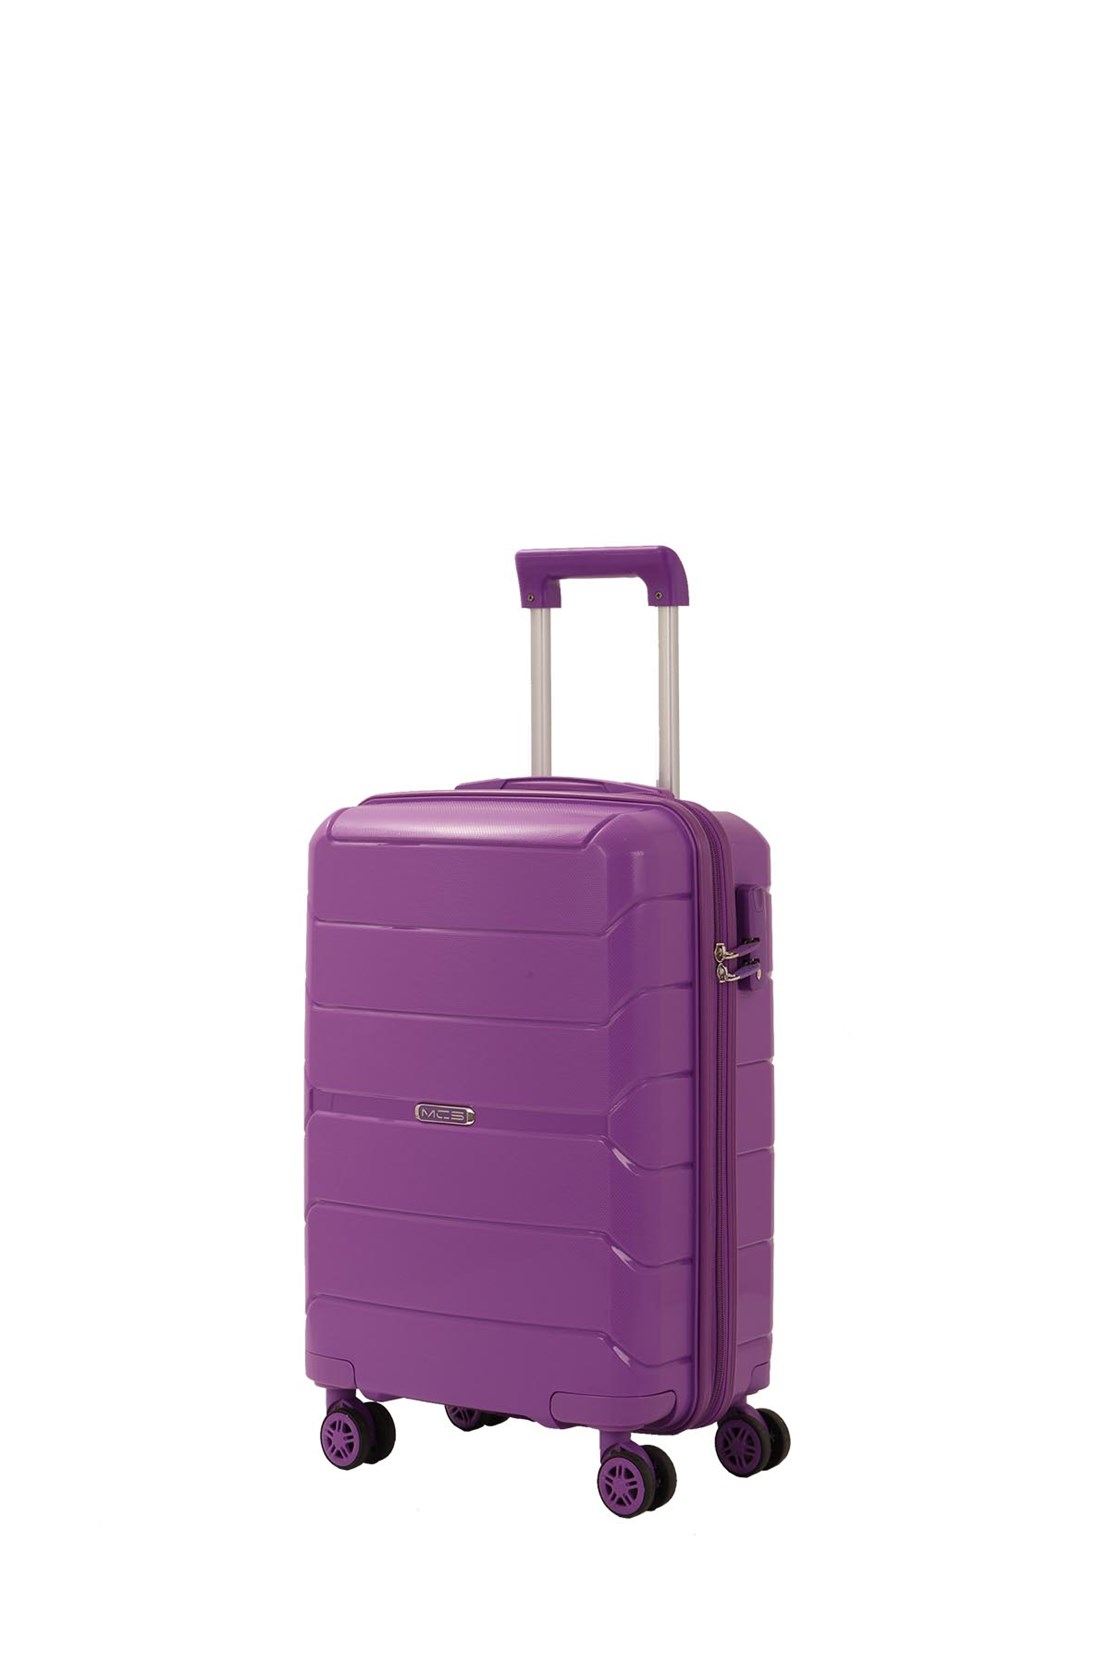 Маленький чемодан для ручьной клади из полипропилена MCS V366 S VIOLET! Для 8-10 кг! - 4